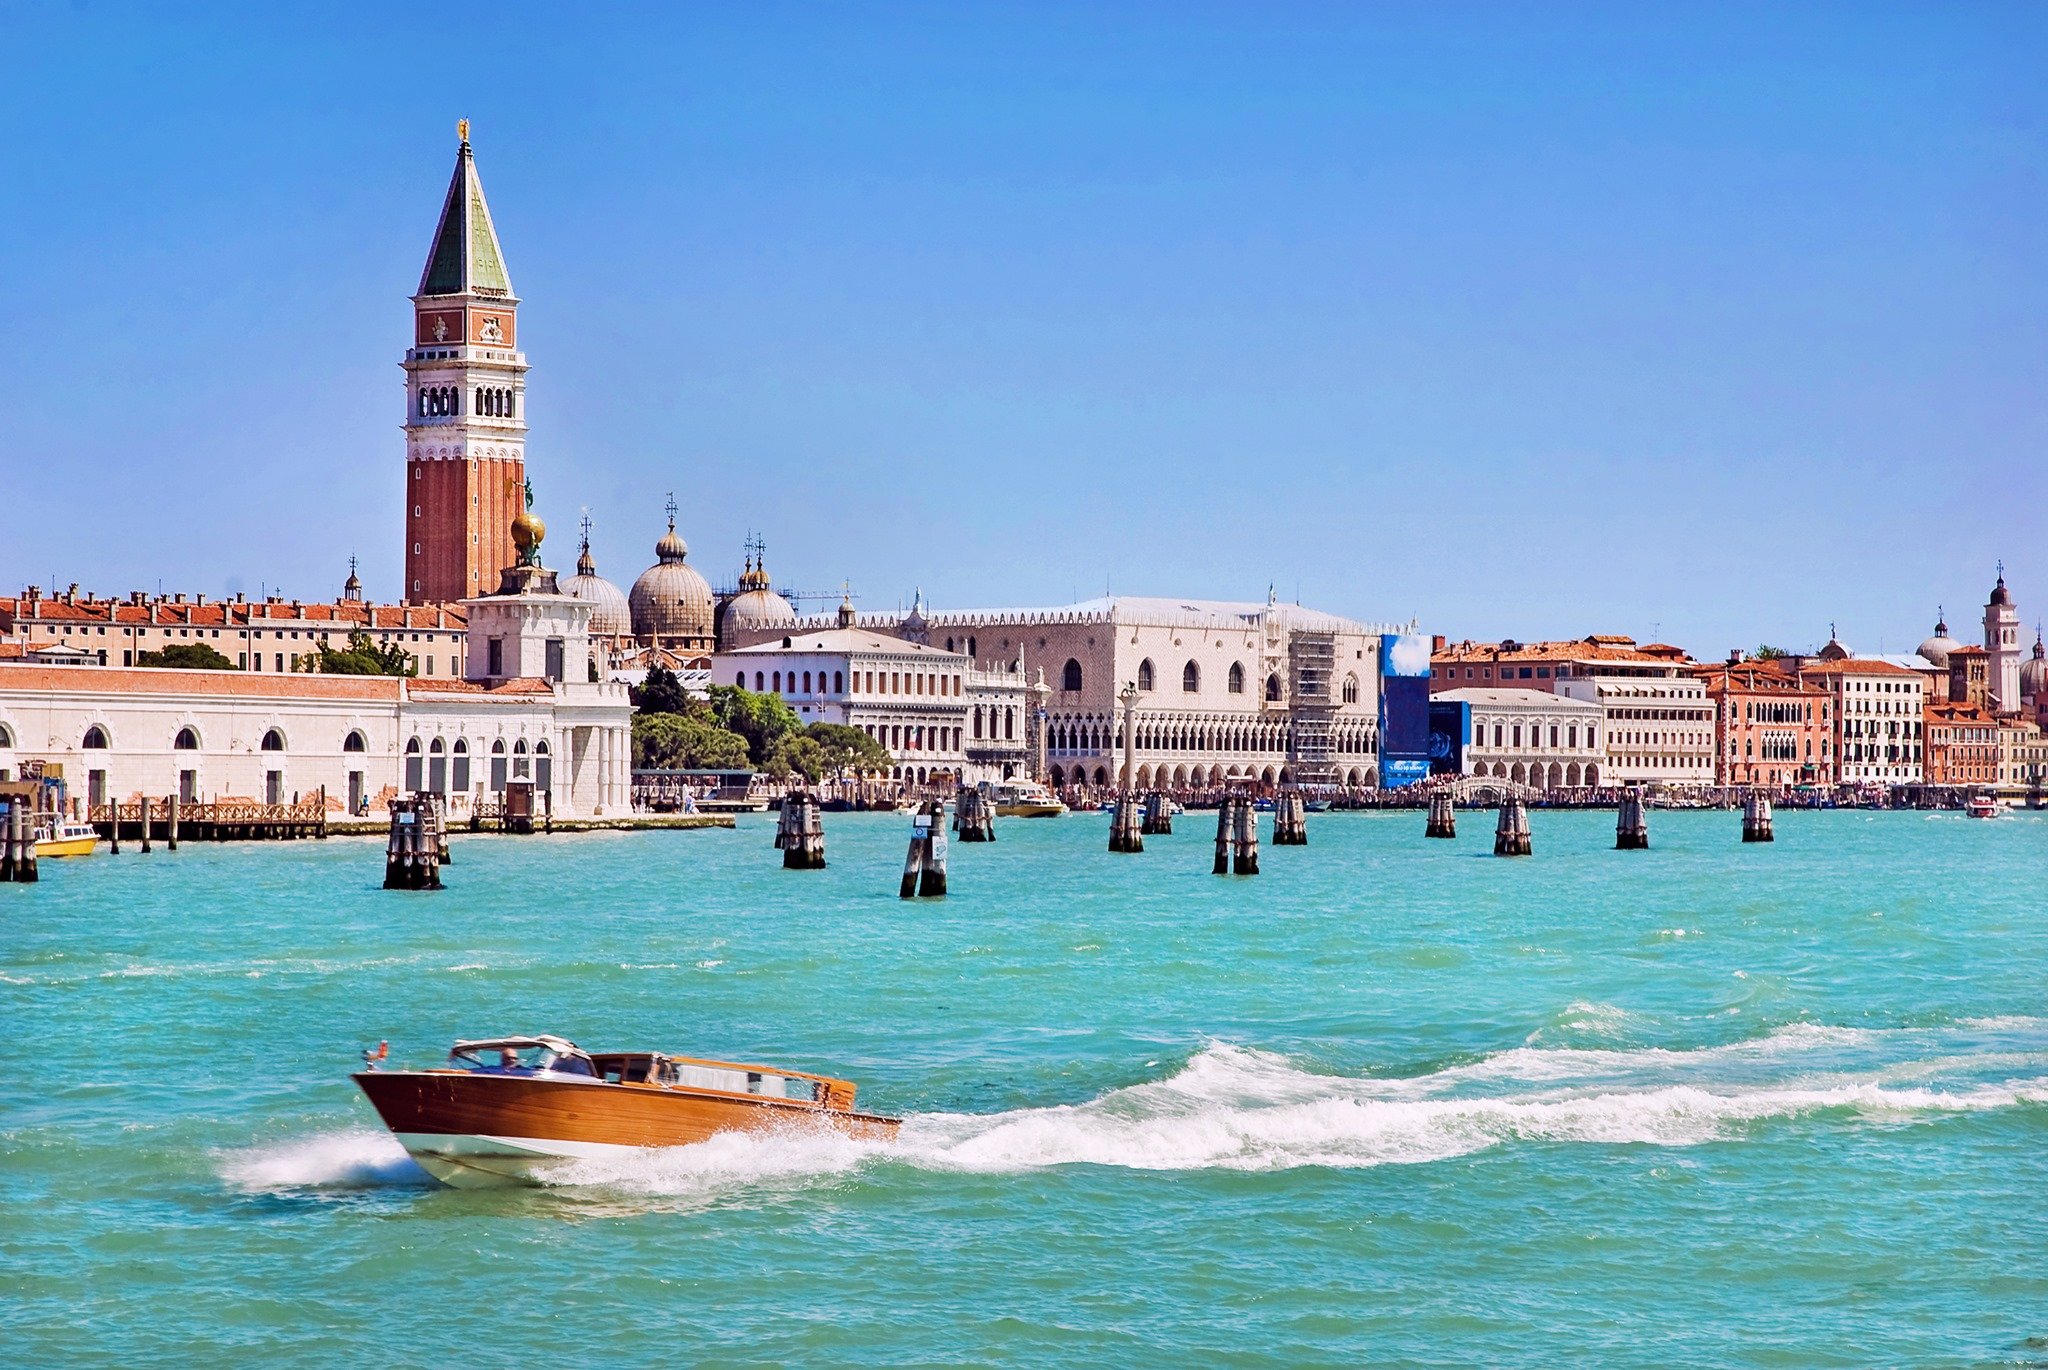 Έχετε σκοπό να επισκεφθείτε τη Βενετία; Ετοιμαστείτε να πληρώσετε εισιτήριο εισόδου